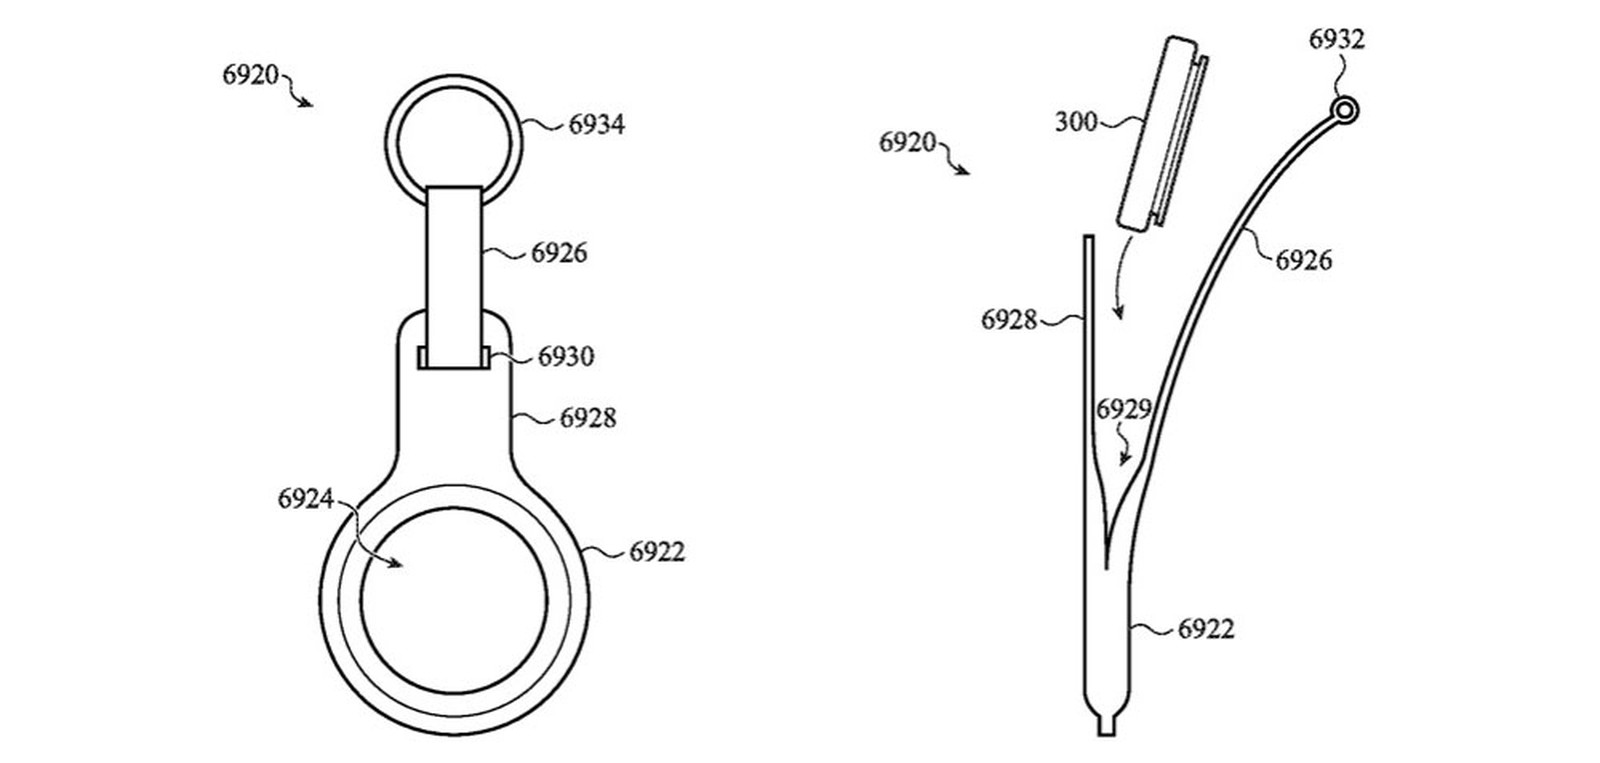 Gli AirTag di Apple appaiono in una richiesta di brevetto